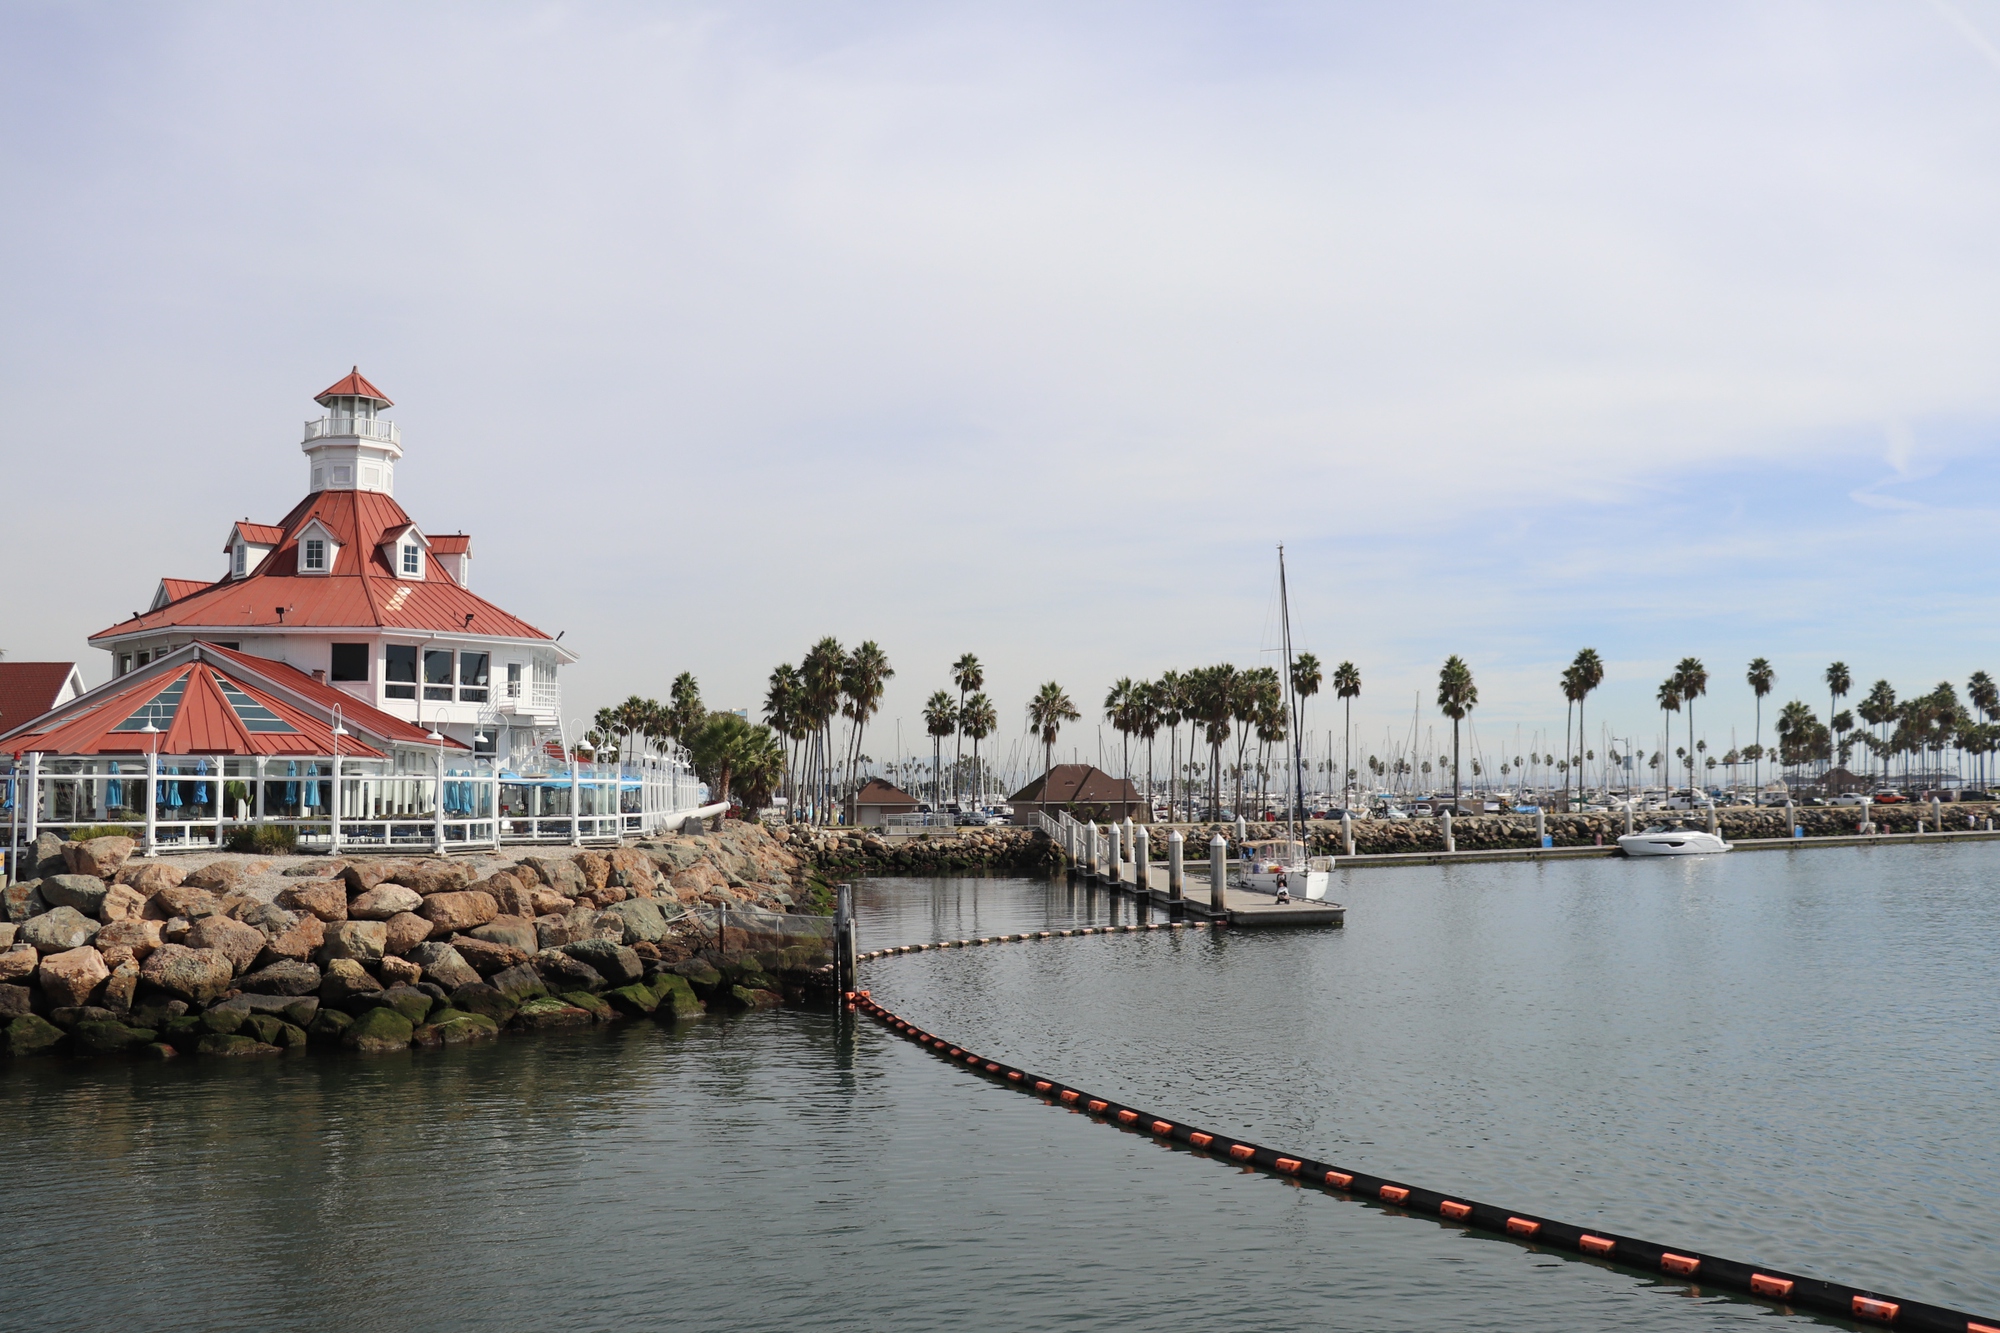 Tham quan biển Long Beach mùa vắng khách ở Mỹ rất đặc biệt - Ảnh 4.